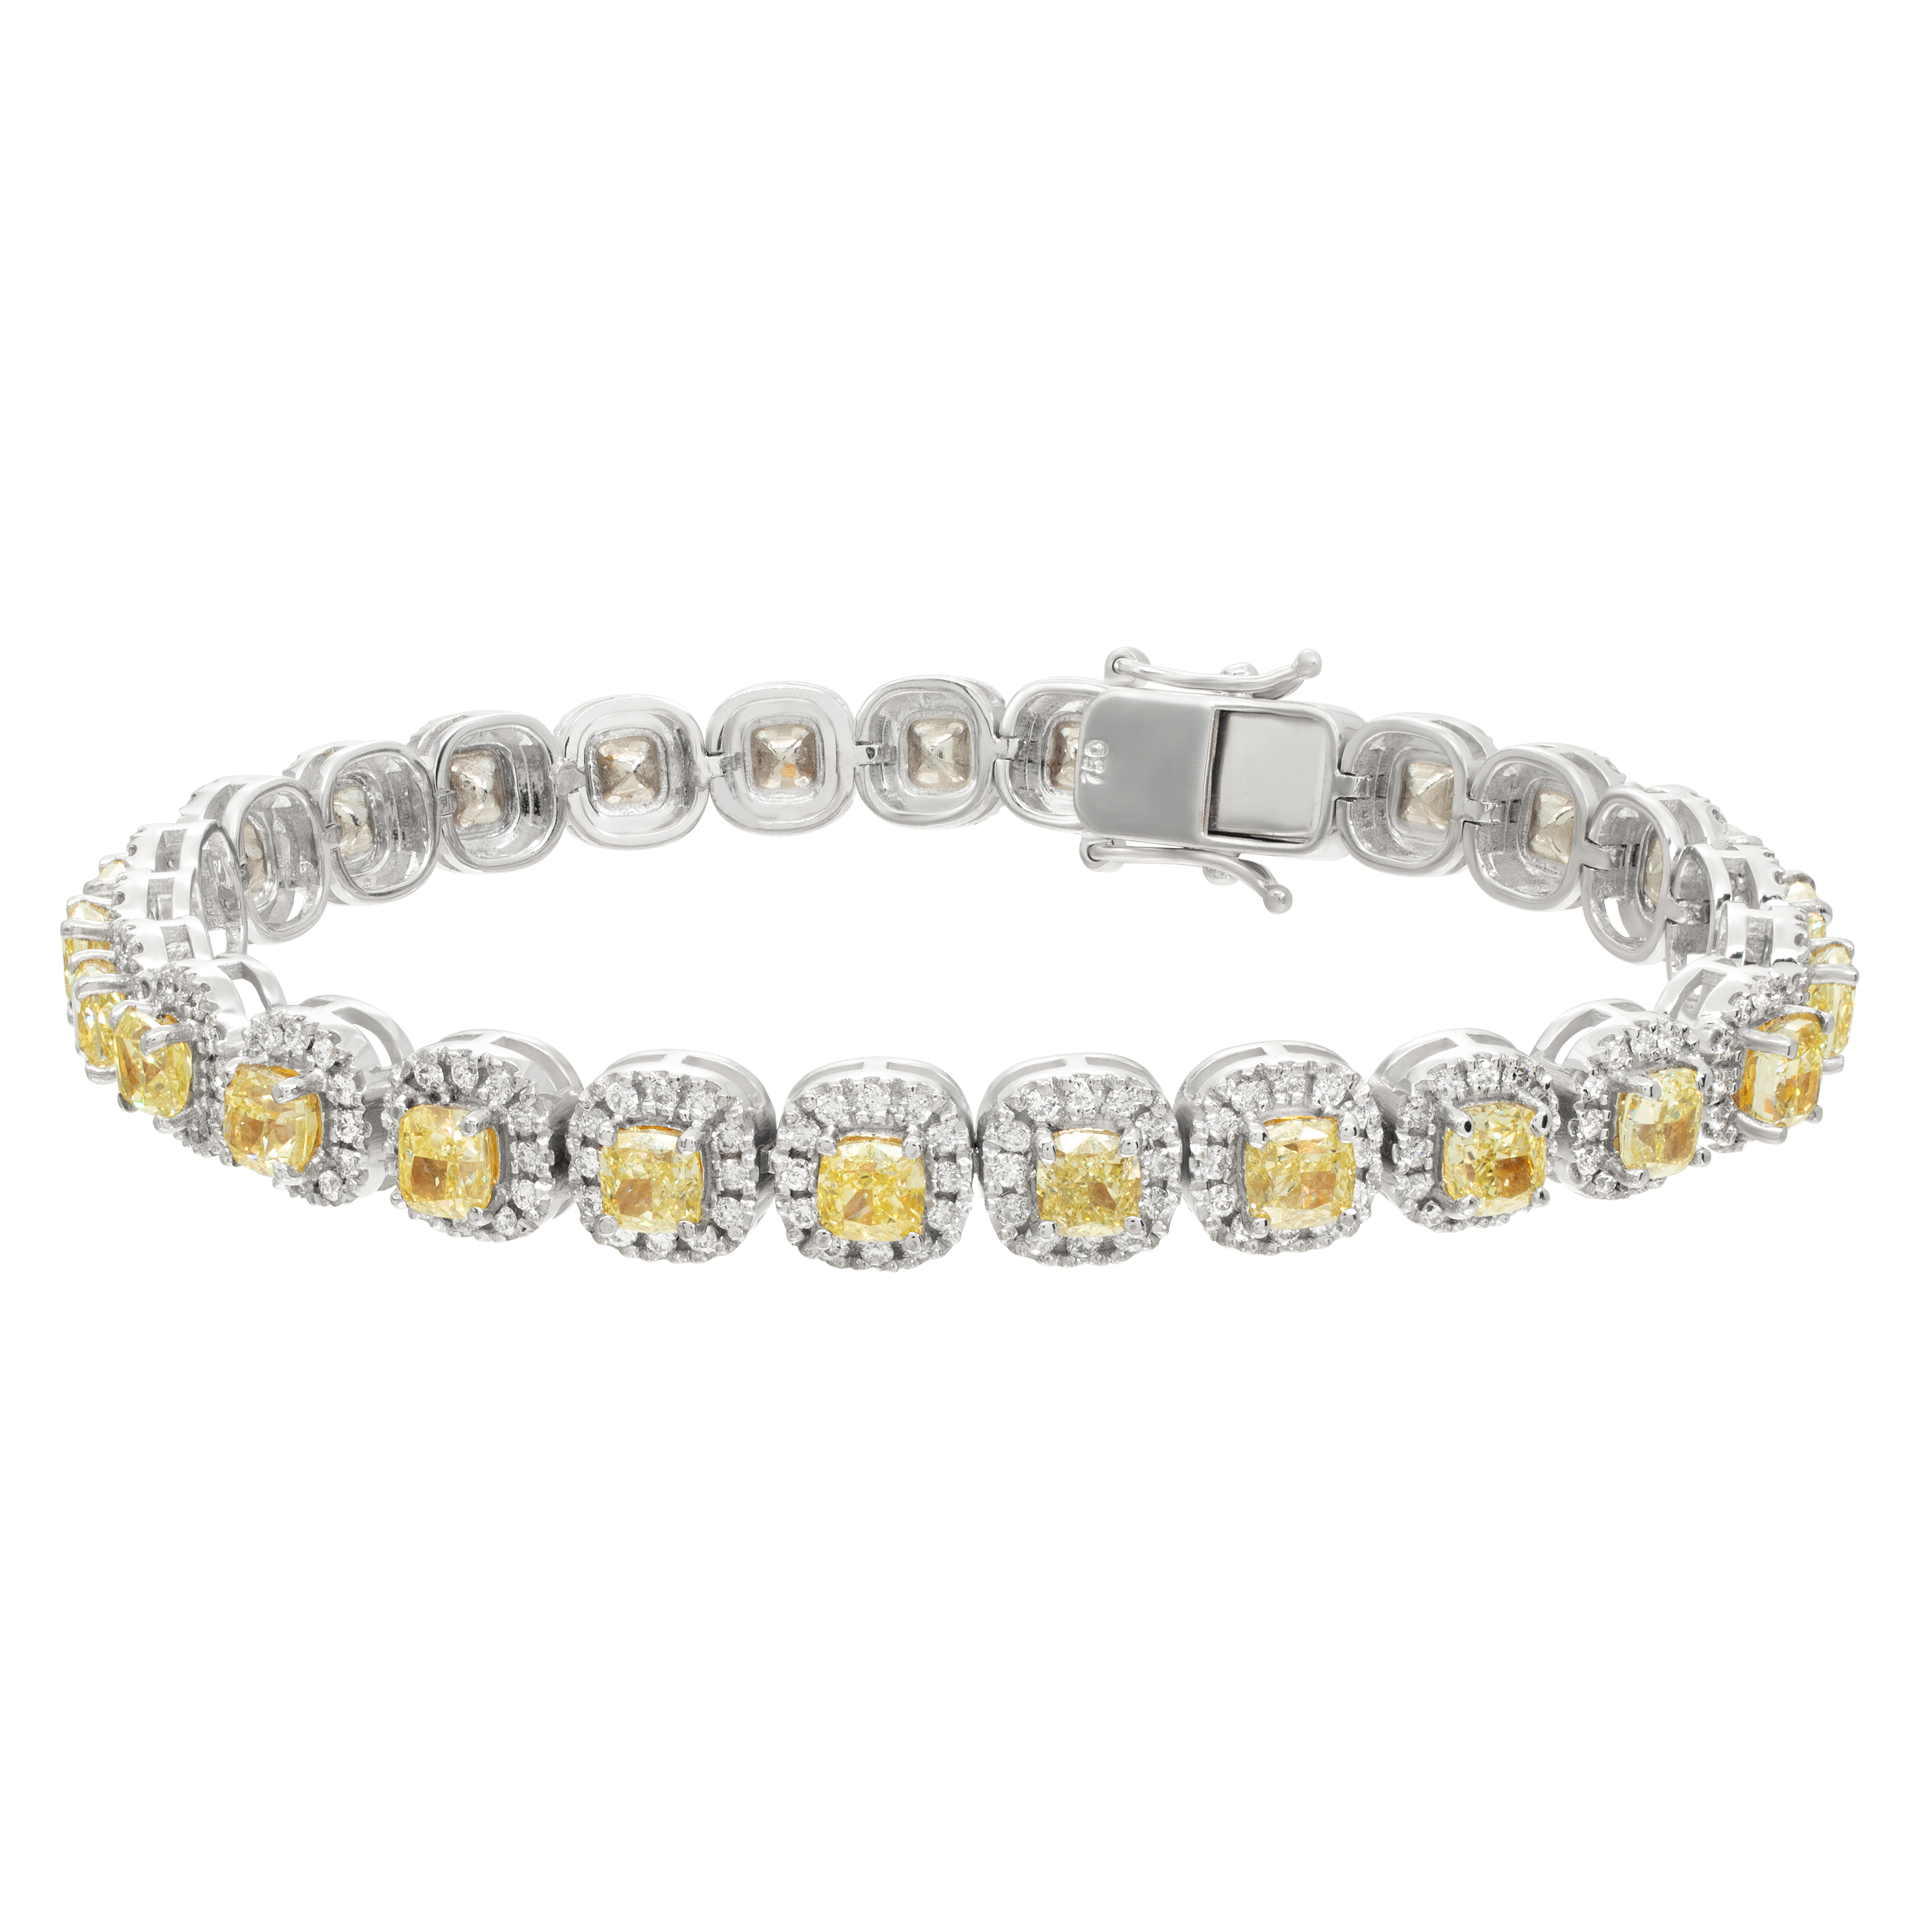 Yellow & white diamond bracelet in 18k white gold